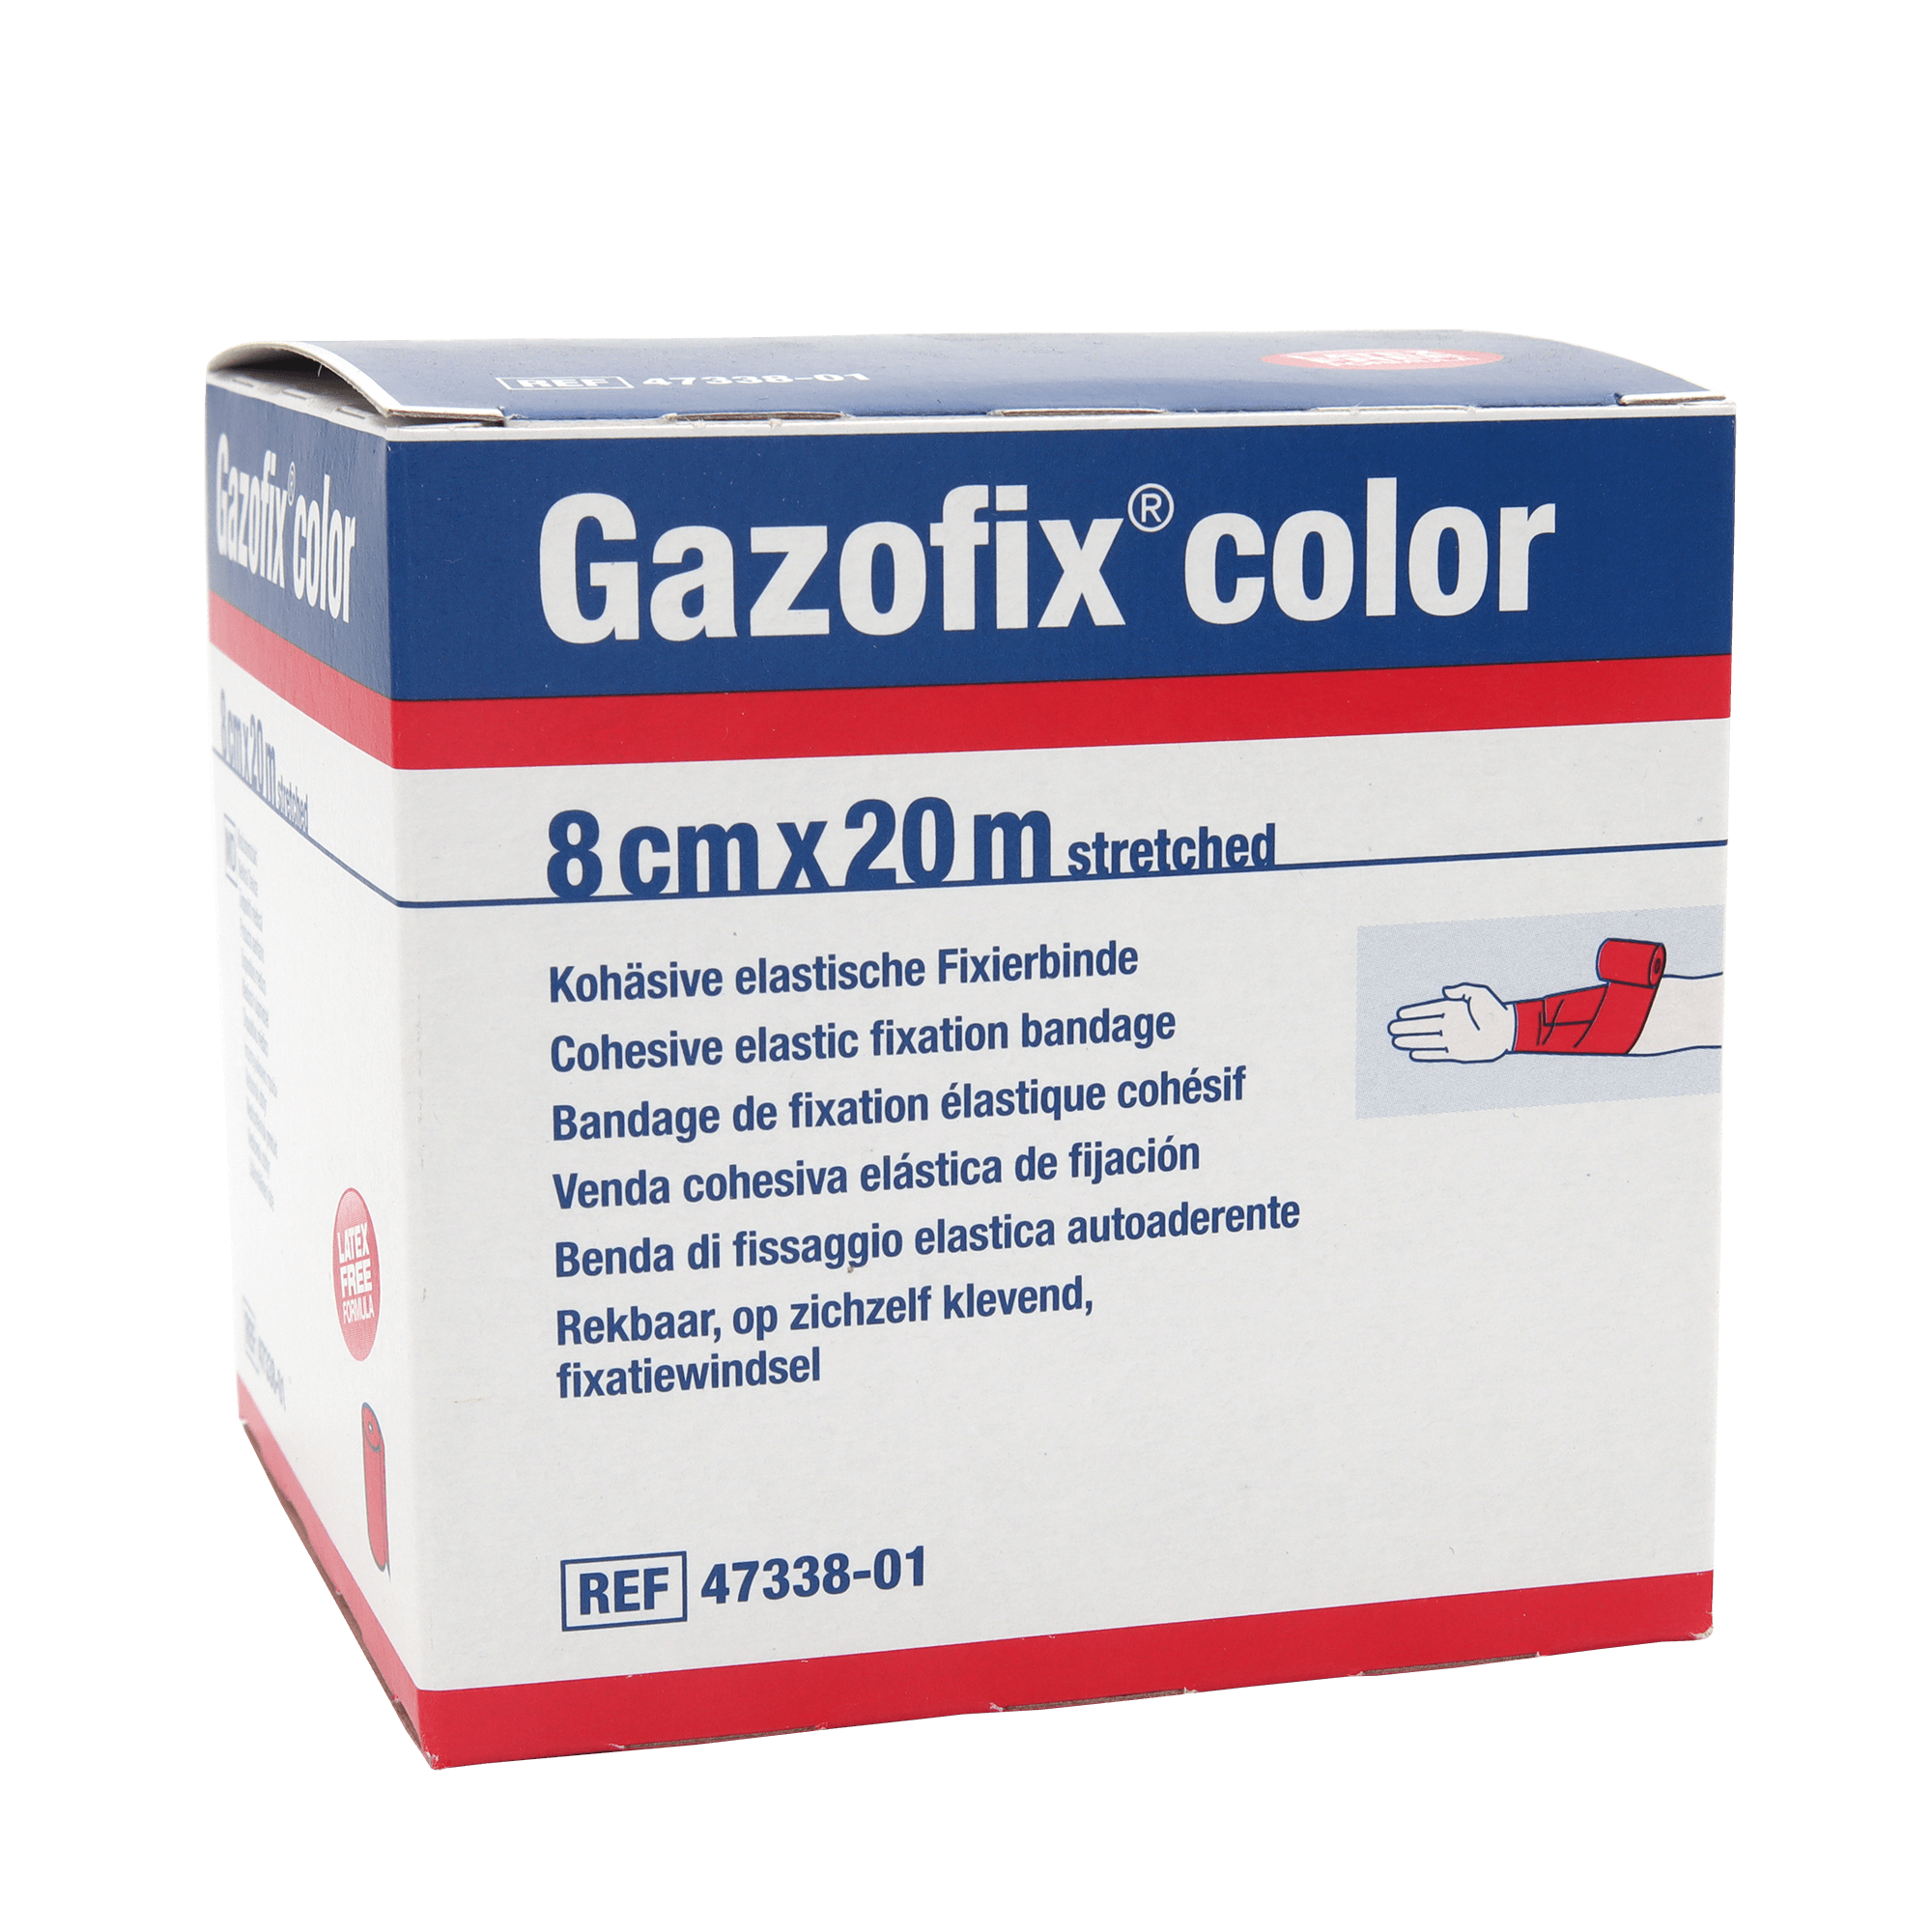 Gazofix® color Fixierbinde kohäsiv 8 cm x 20 m pink